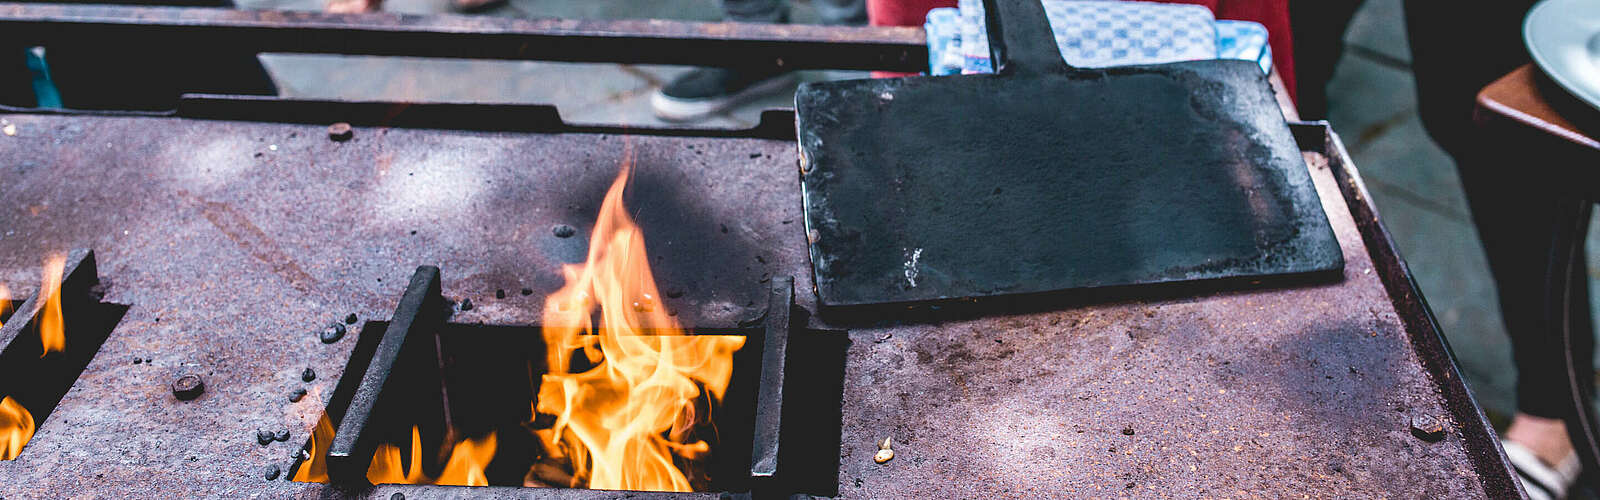 Klemmkuchen wird über dem offenen Feuer gebacken,
        
    

        Foto: Tourismusverband Fläming e.V./Antje Wickboldt